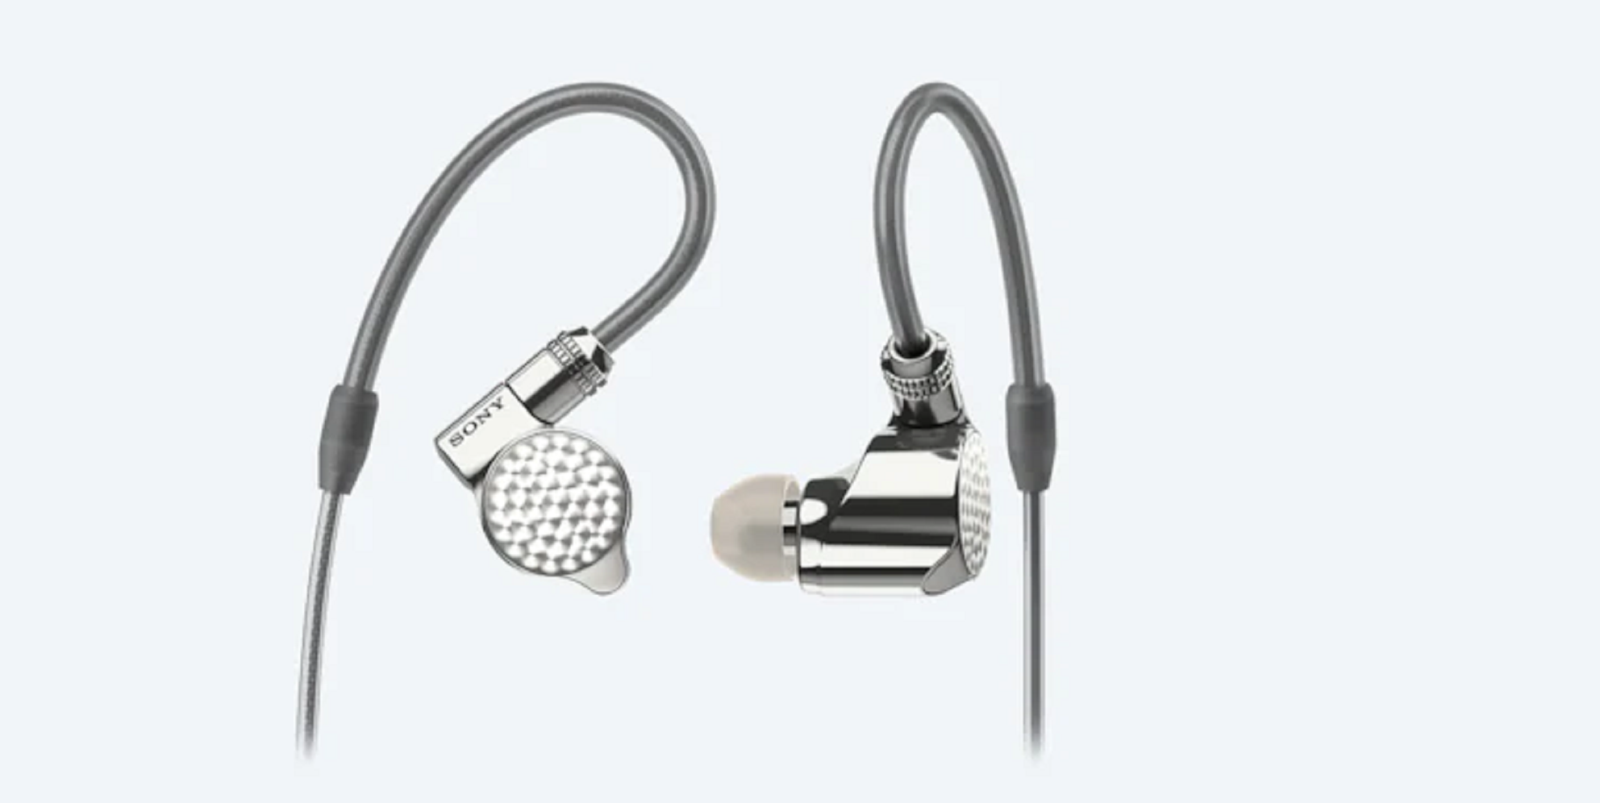 Sony trình làng mẫu tai nghe in-ear cao cấp đầu bảng IER-Z1R